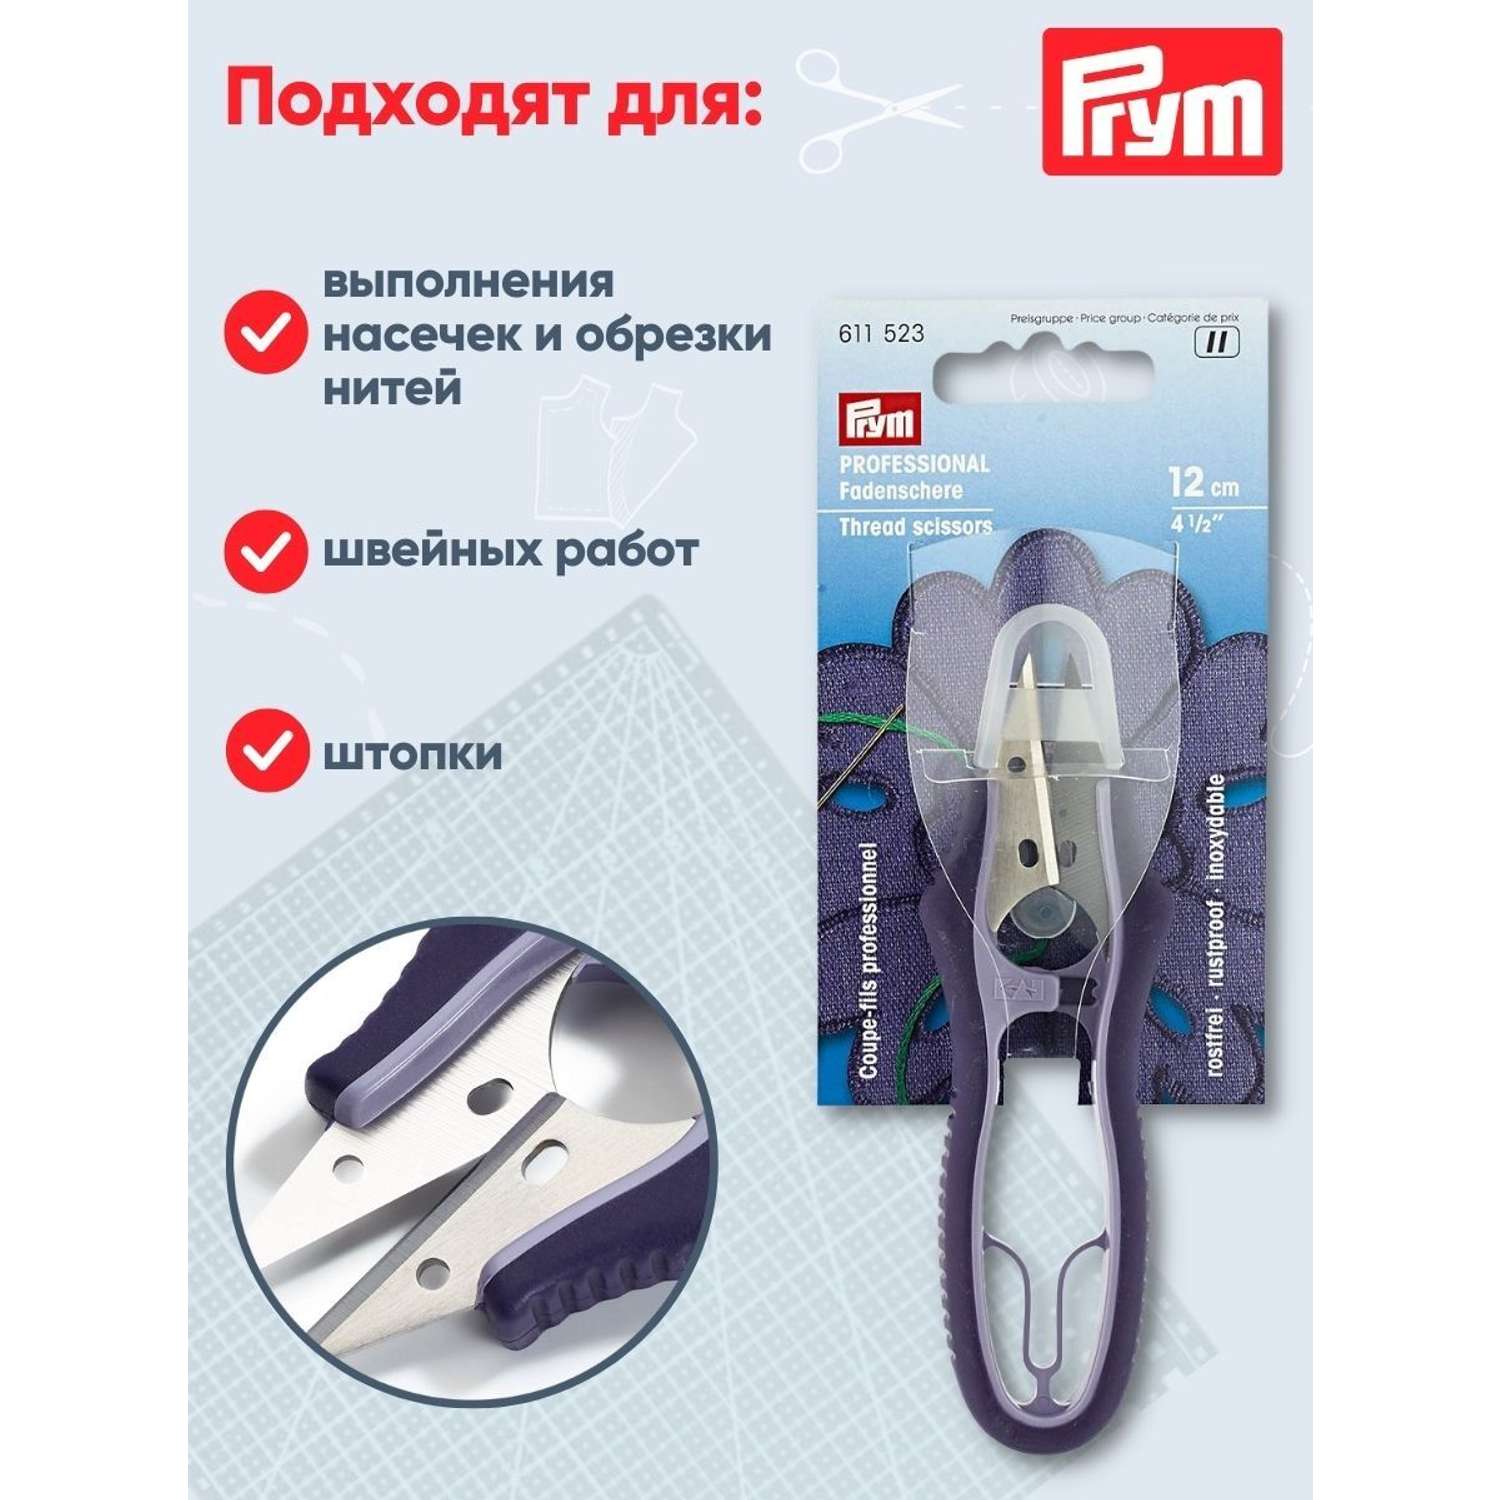 Ножницы Prym портновские со стальными лезвиями и удобными пластиковыми ручками 12 см 611523 - фото 3